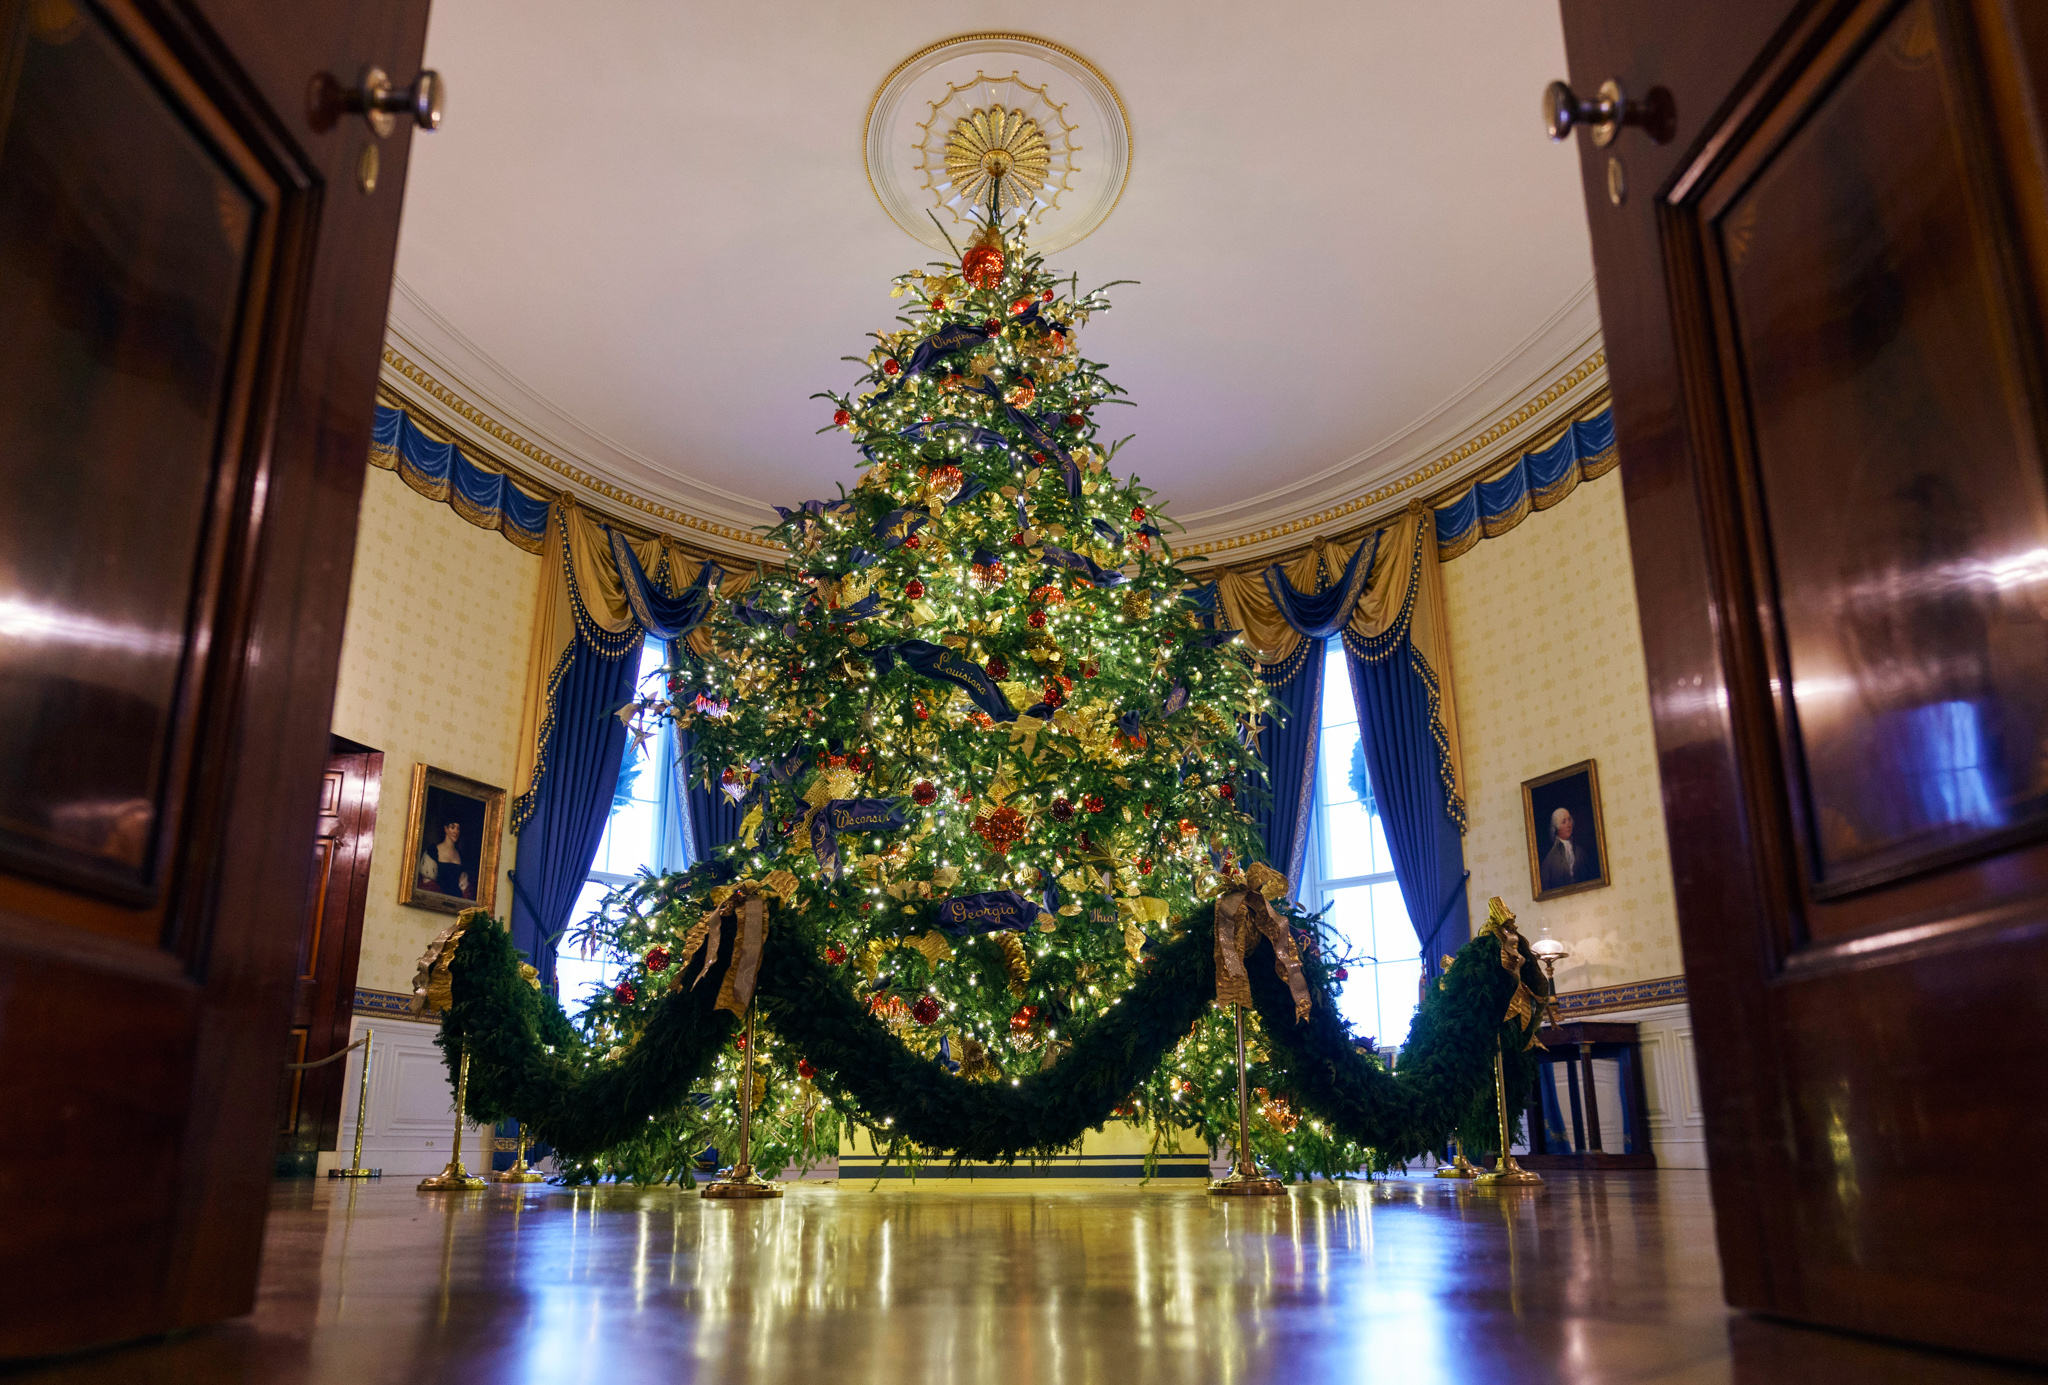 ホリデーシーズンを祝うホワイトハウスの飾りつけ « American View